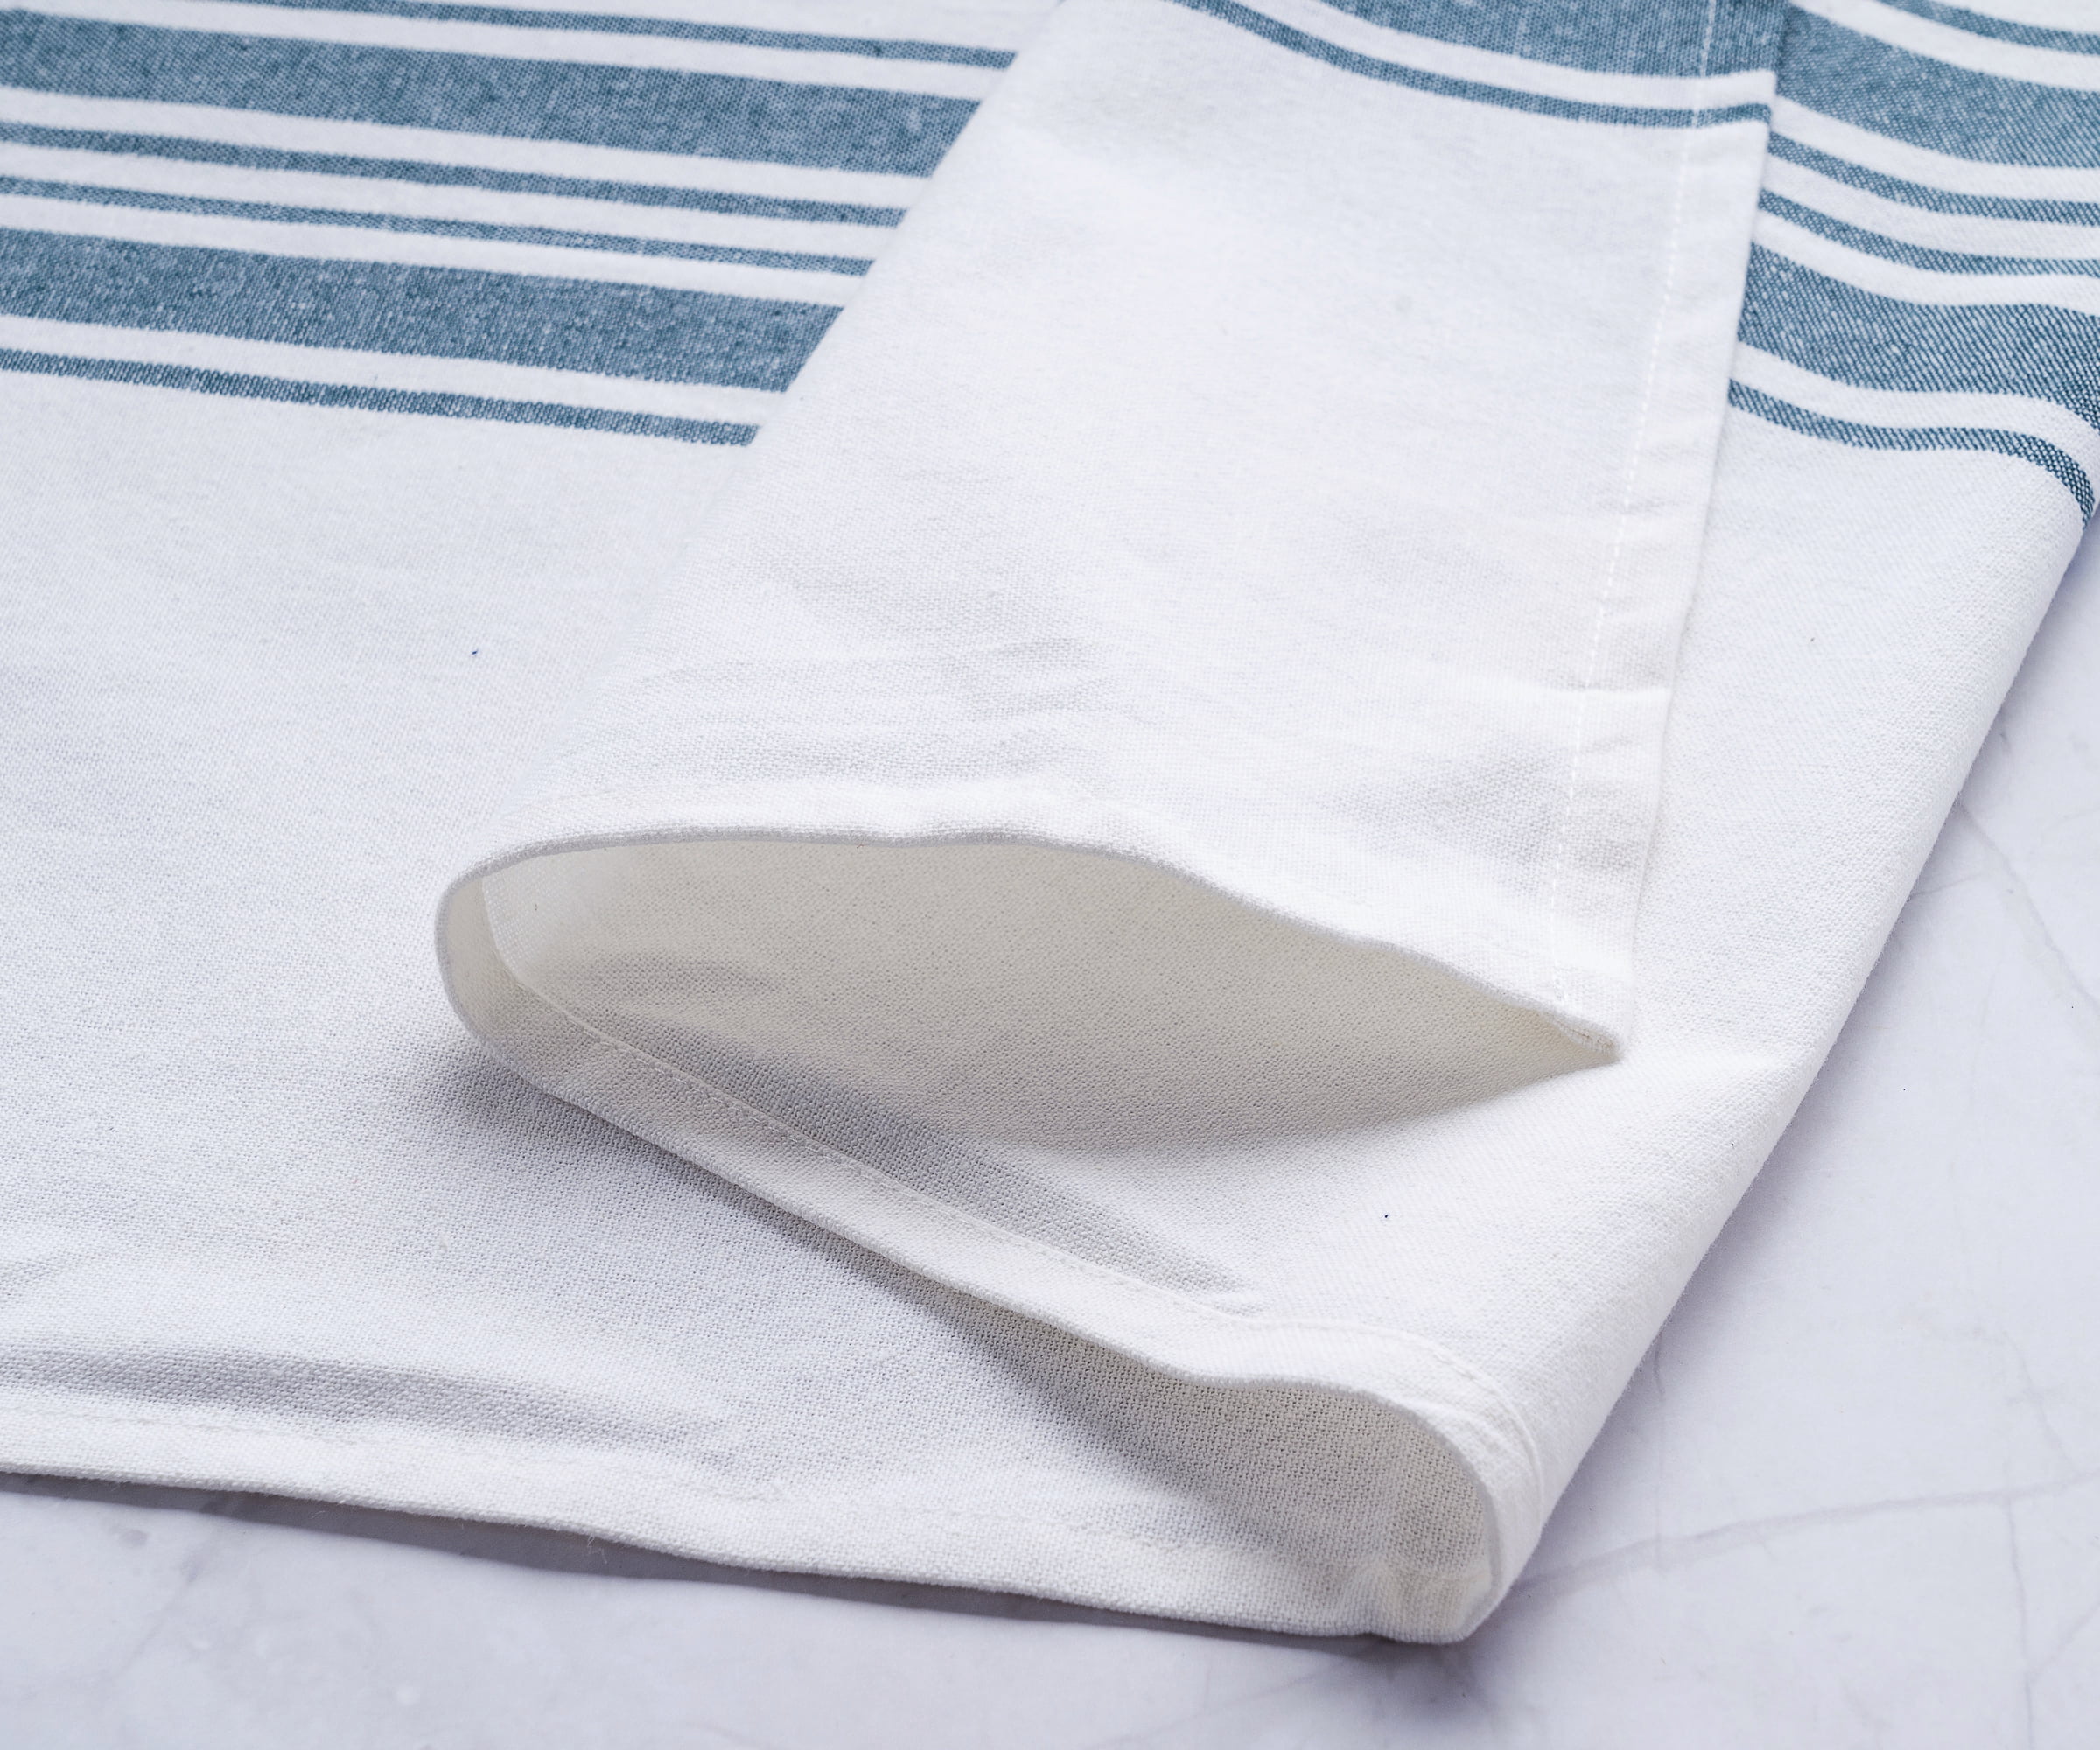 Kitchen, Tea & Dish Towel / 45*90 cm (18''x35) – El Patito Towels and  Bathrobes